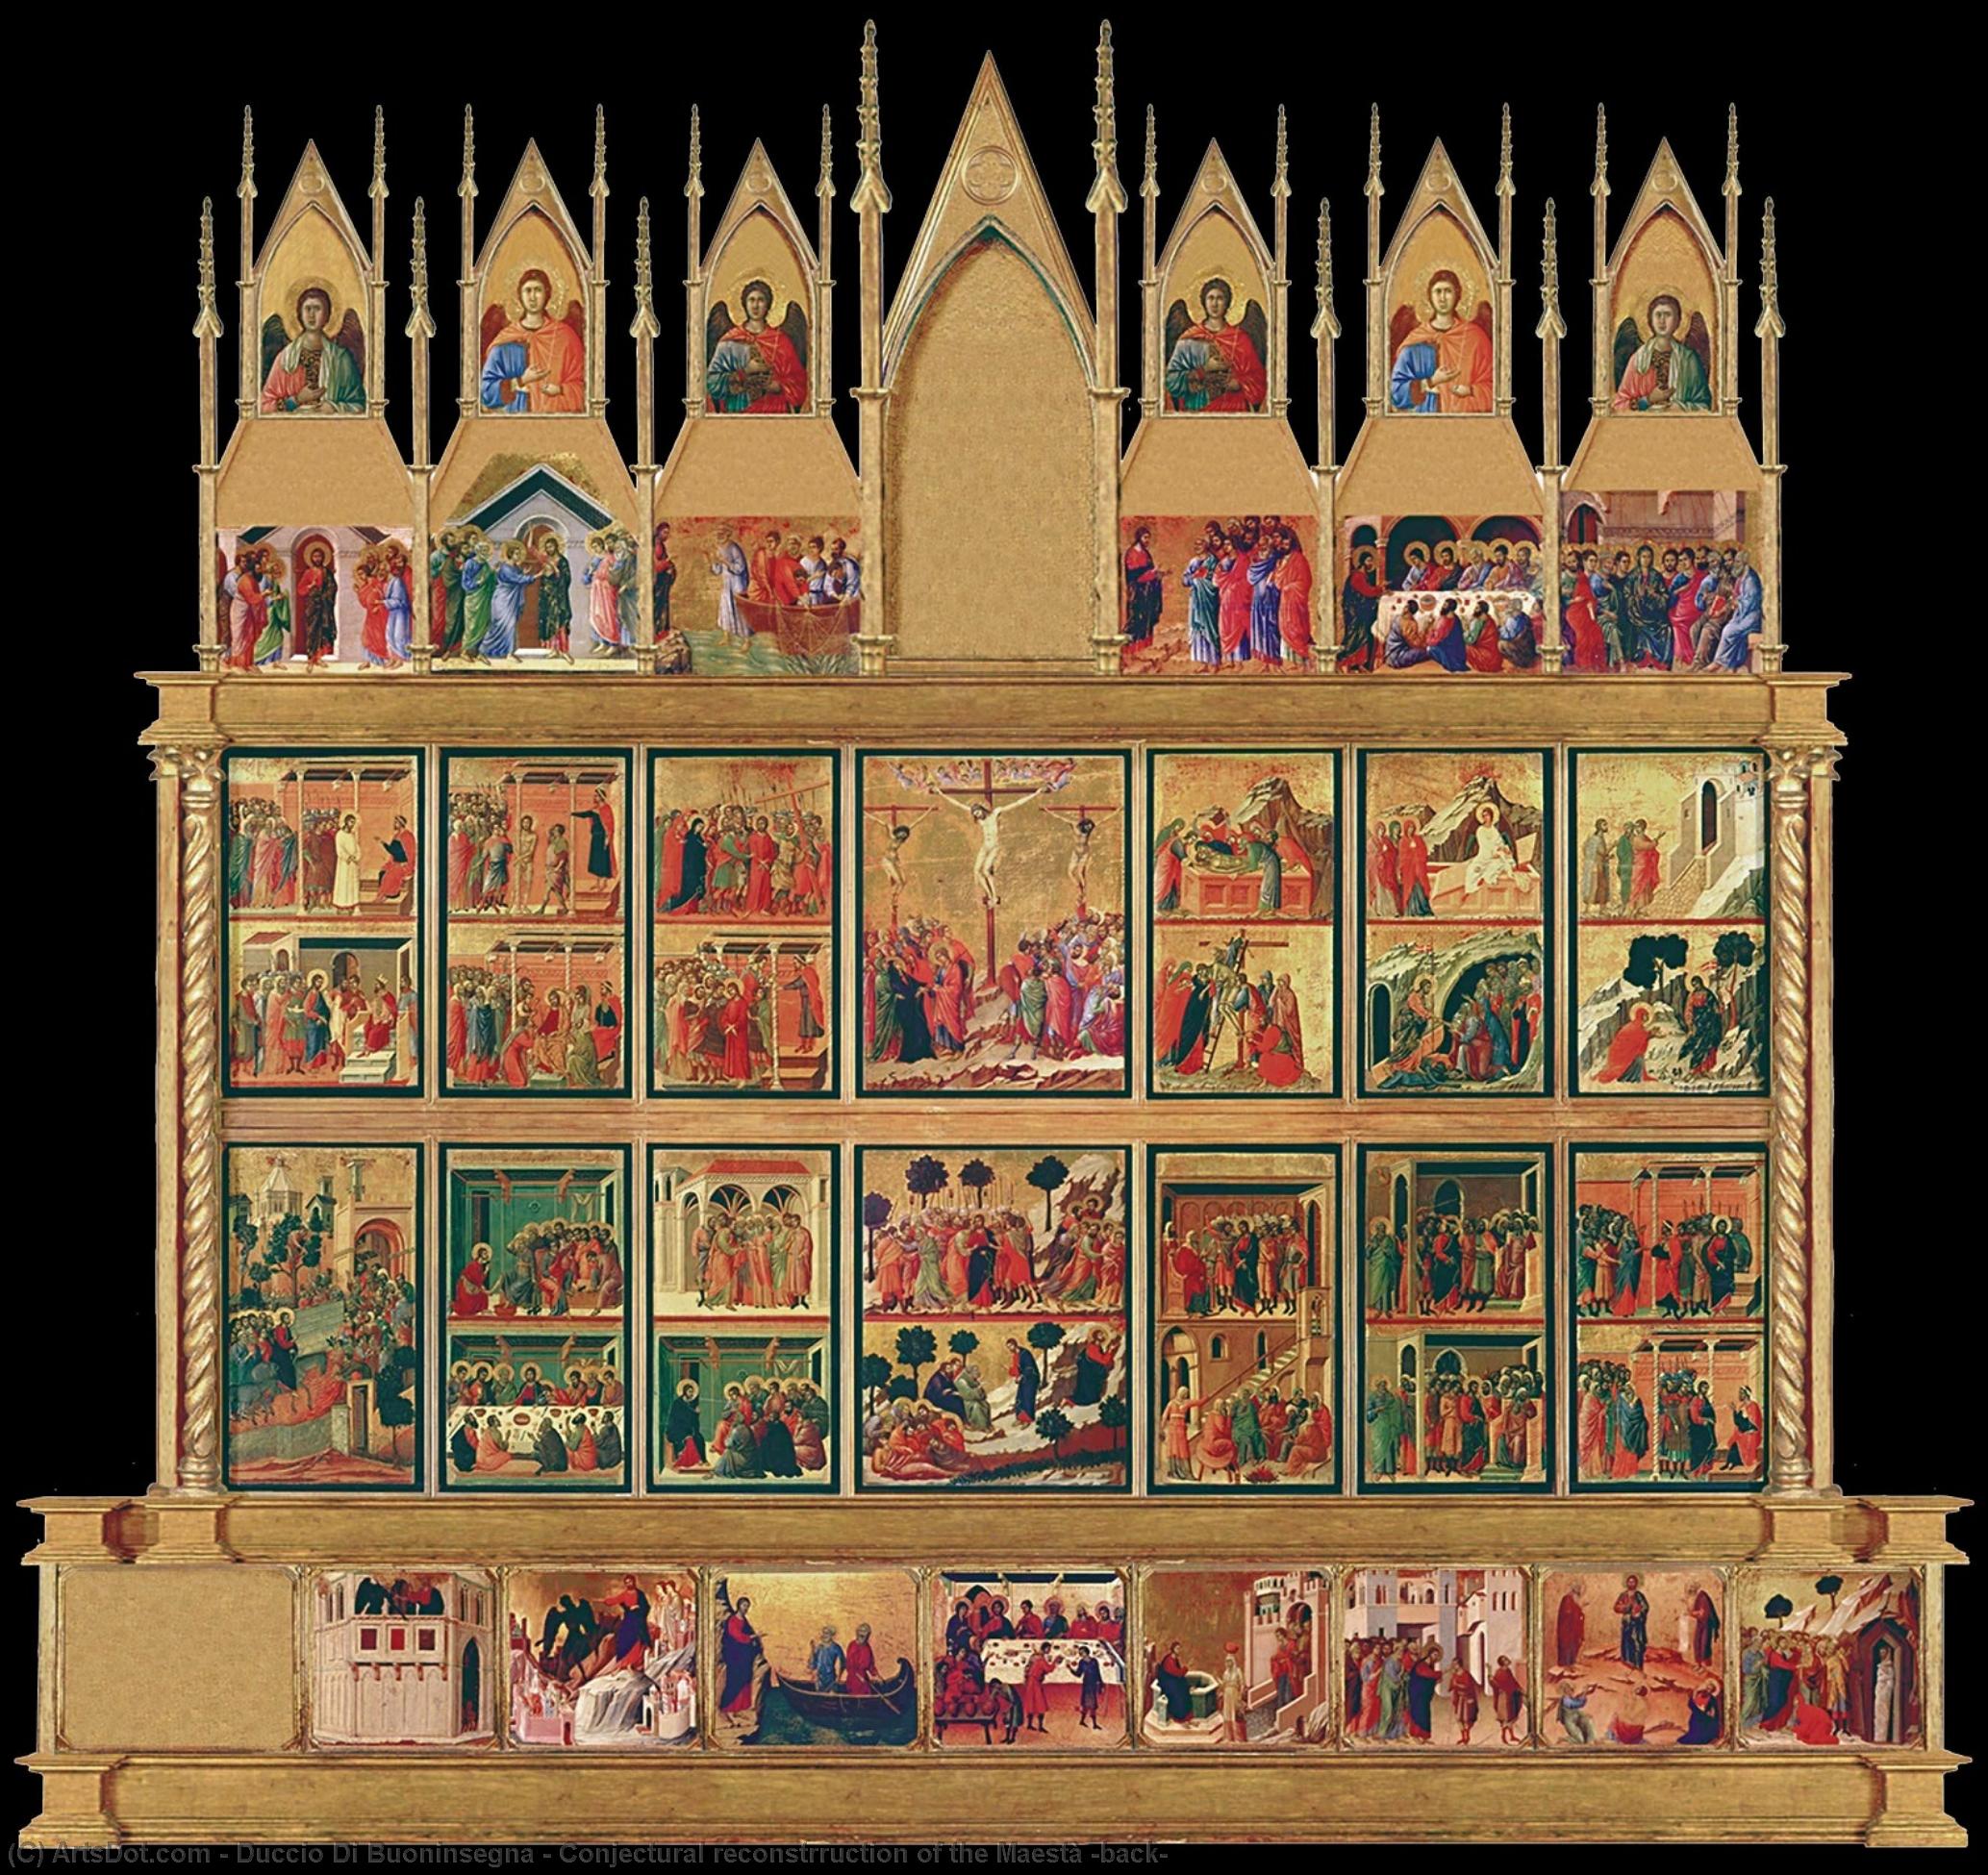 WikiOO.org - Encyclopedia of Fine Arts - Maleri, Artwork Duccio Di Buoninsegna - Conjectural reconstrruction of the Maestà (back)